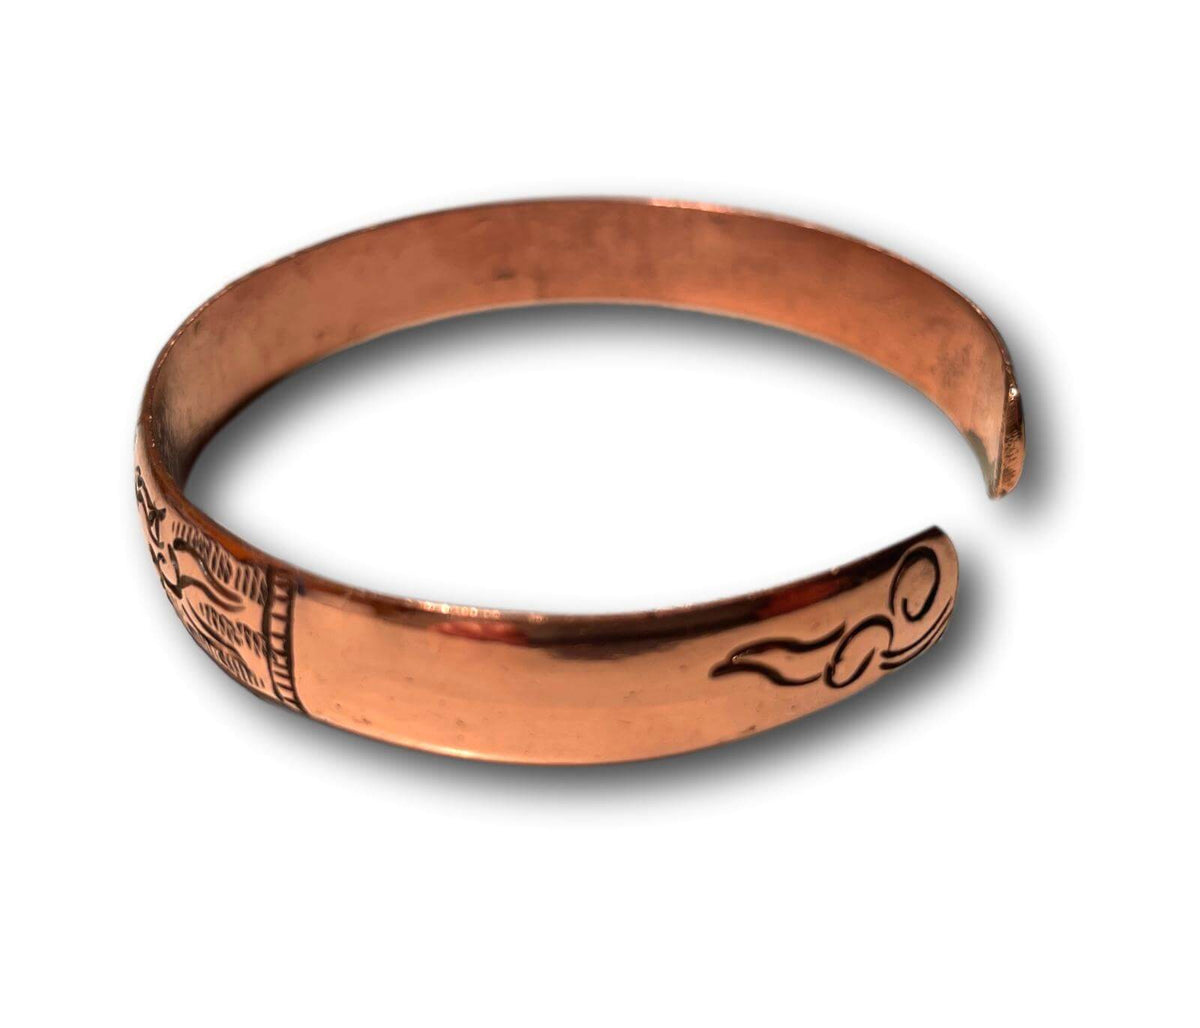 100% Pure Copper Nepalese Tibetan Buddhist Hindu Ayurvedic Bracelet Cuff - Handmade In Nepal 🇳🇵